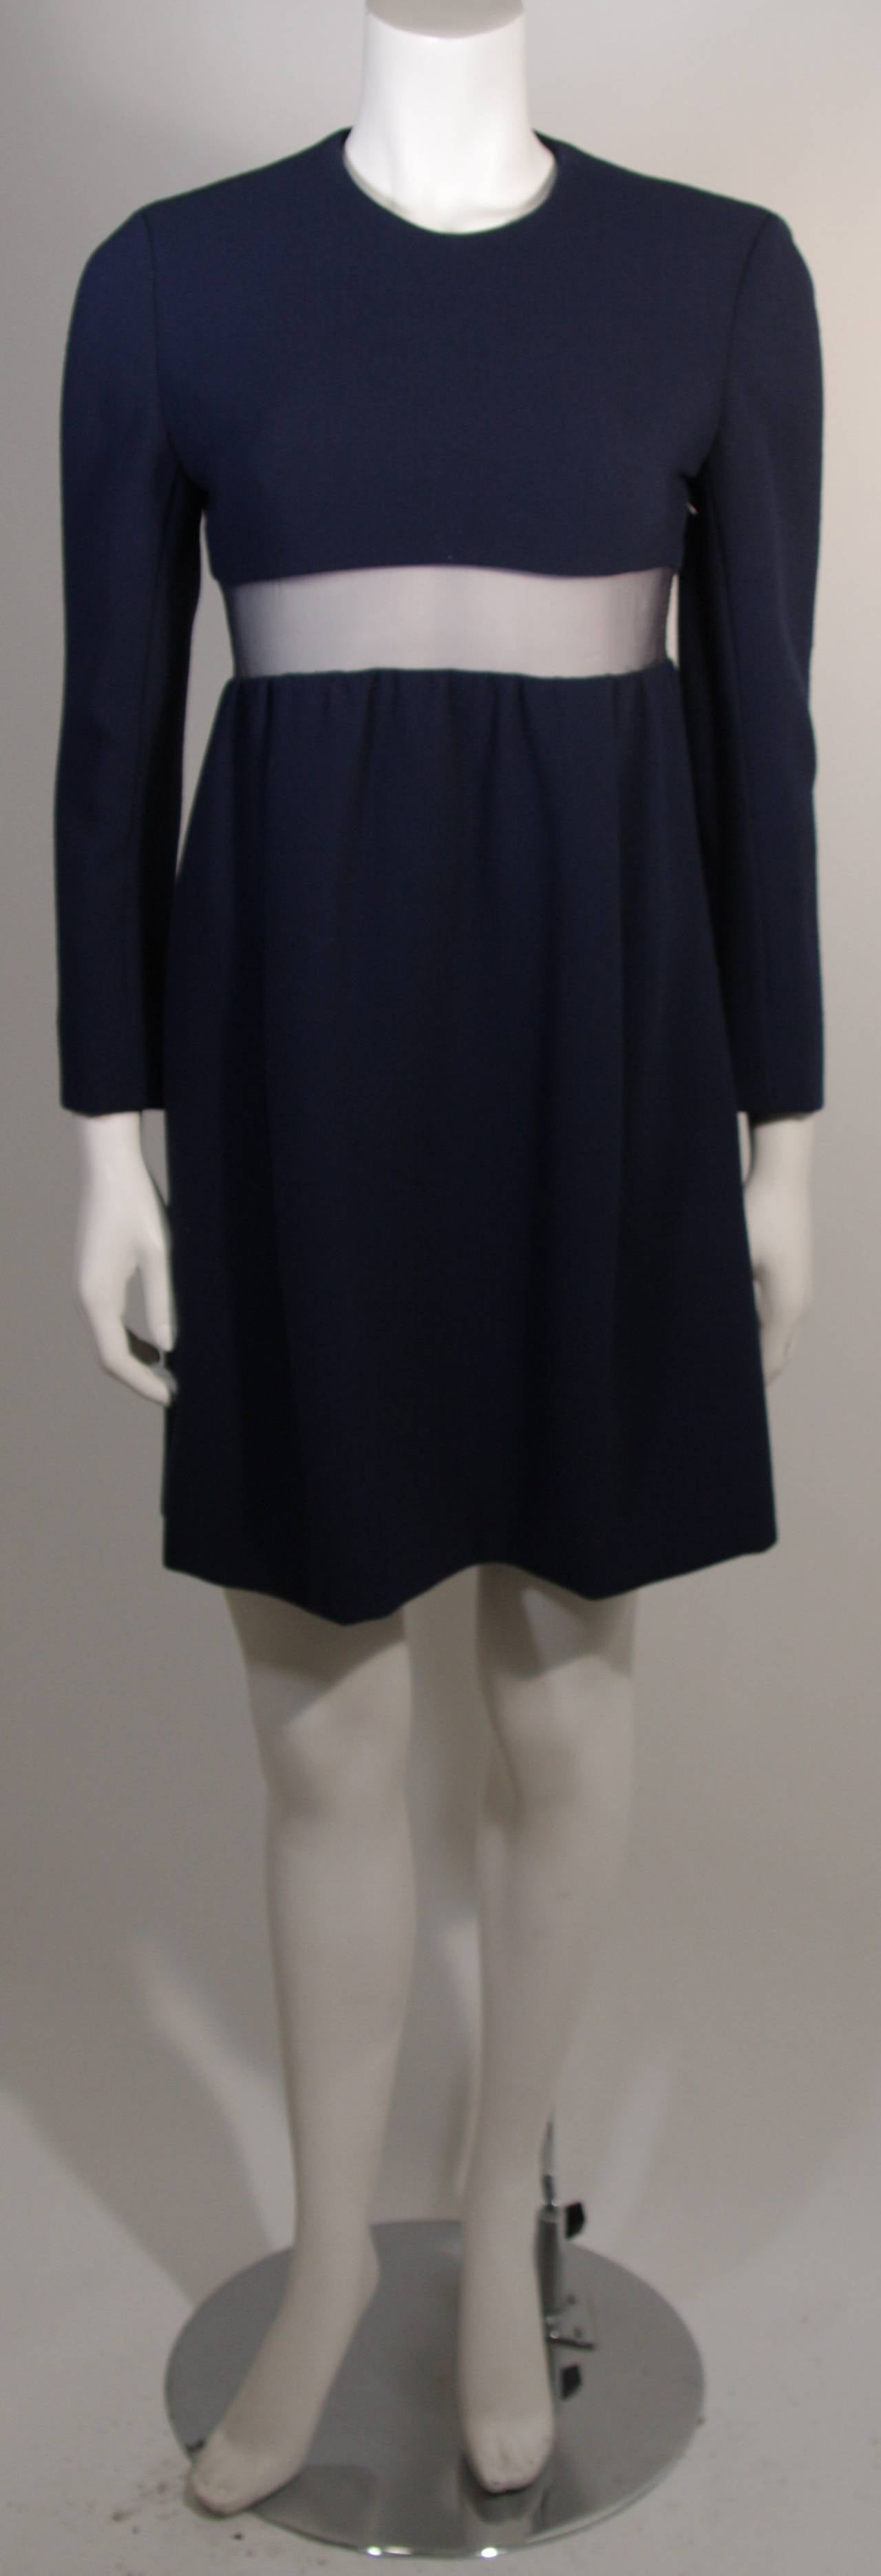 Dieses Kleid von Galanos ist aus blauer Wolle gefertigt, hat lange Ärmel und ist in der Taille mit einem Mesh-Detail versehen. Ein seitlicher Reißverschluss erleichtert den Zugang und es gibt Seitentaschen. Ein reizvolles Design. 

Maße